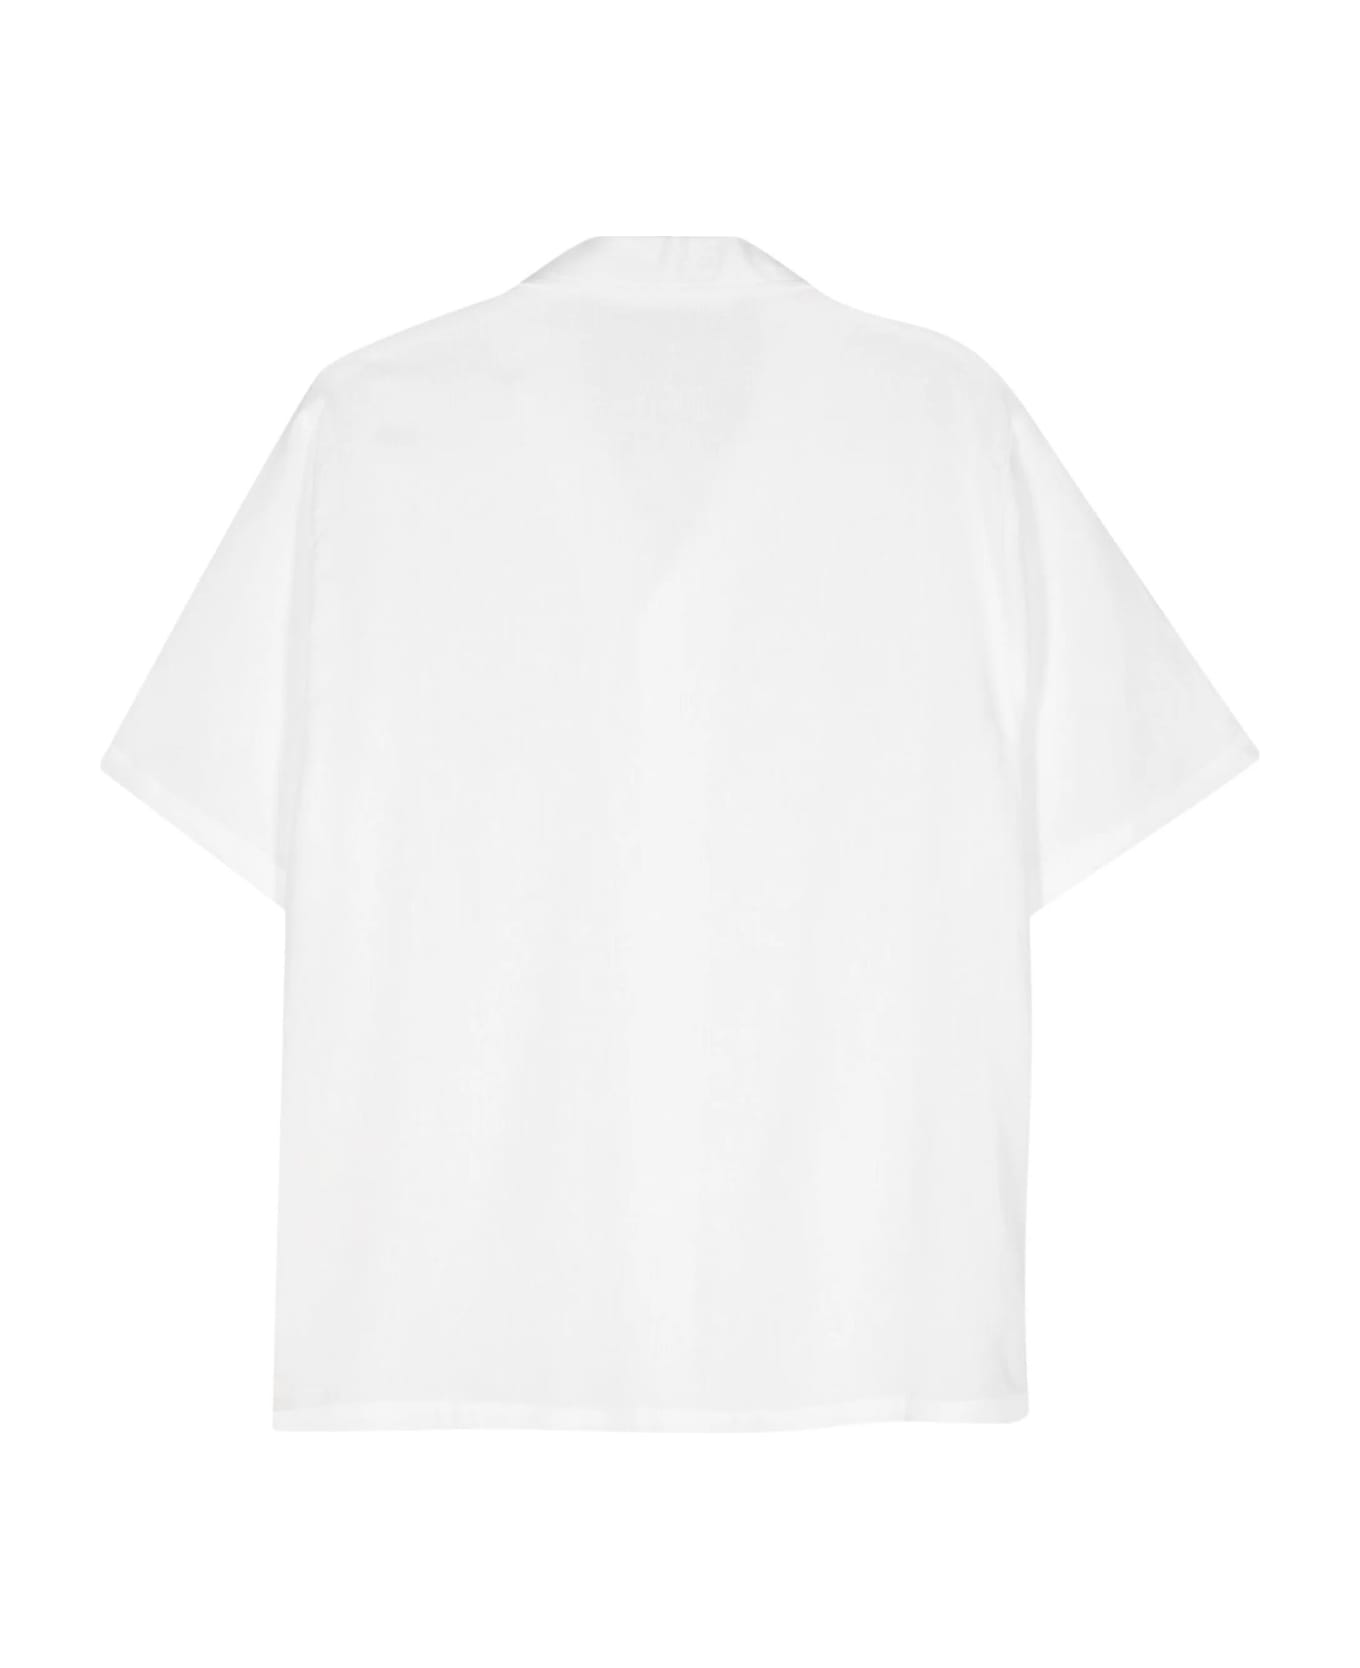 Séfr Sefr Shirts White - White シャツ